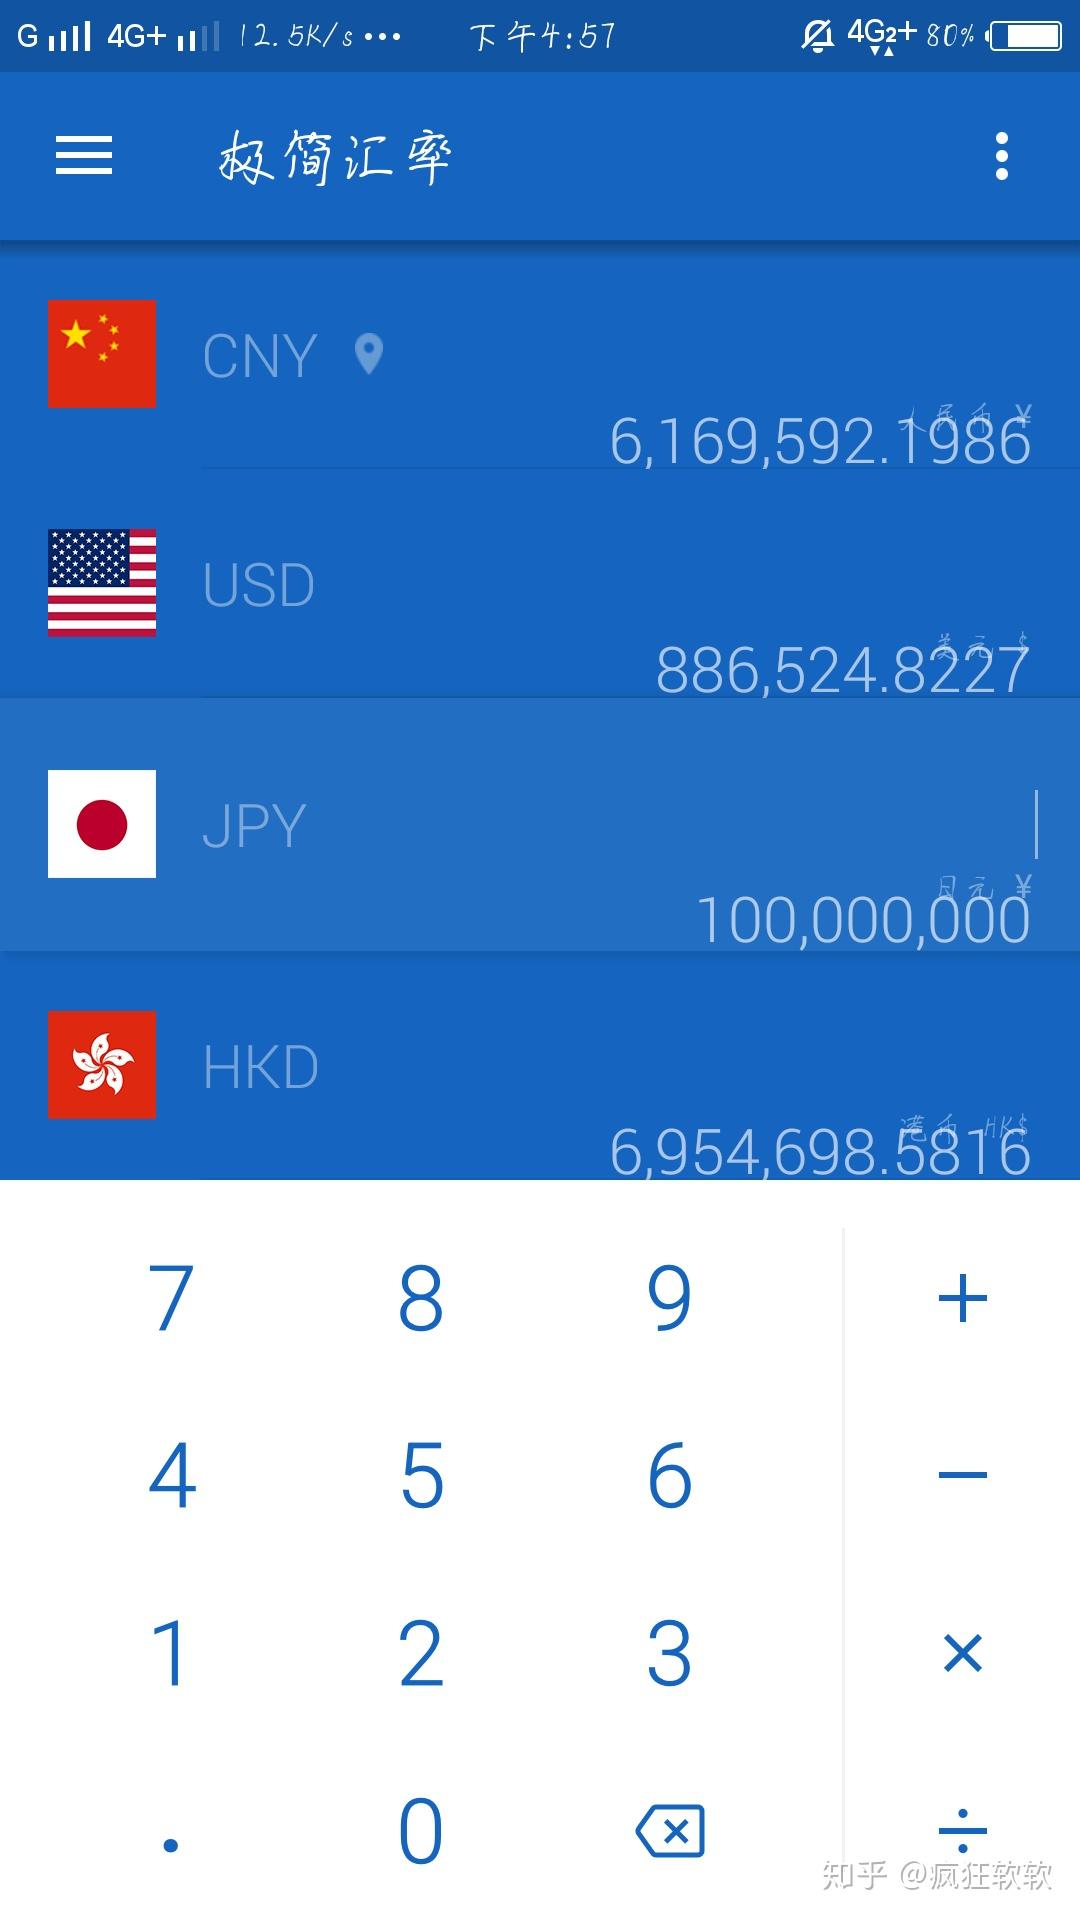 一亿日元等于多少人民币?